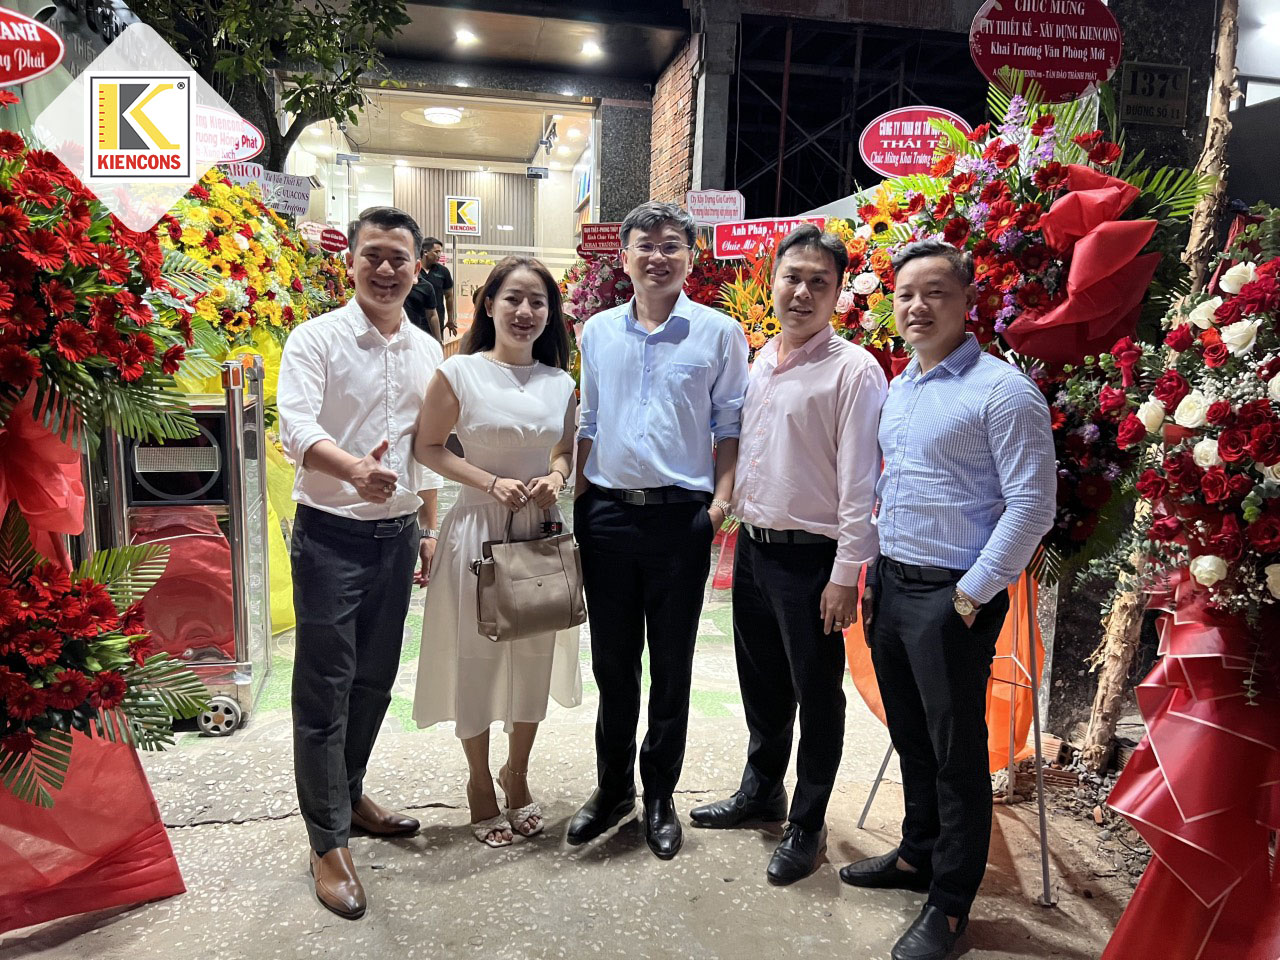 Giám đốc Kiencons và cùng đại gia đình của Shark Lê Hùng Anh chụp hình mừng dịp khai trương văn phòng Kiencons